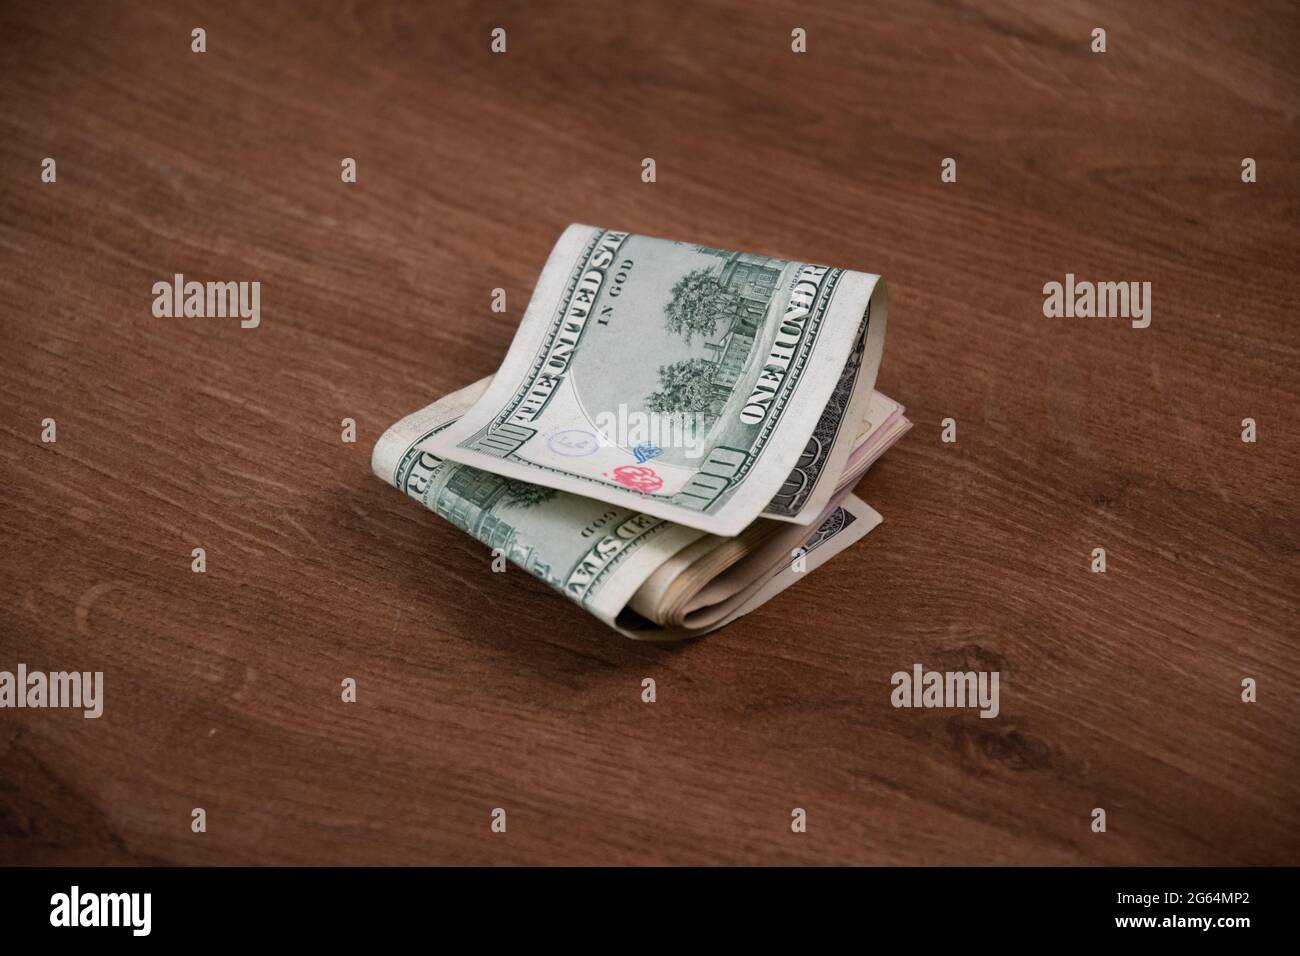 La pile d'argent des billets en dollars américains a été pliée en deux sur fond de bois. Un billet de cent dollars endommagé par des timbres d'encre Banque D'Images